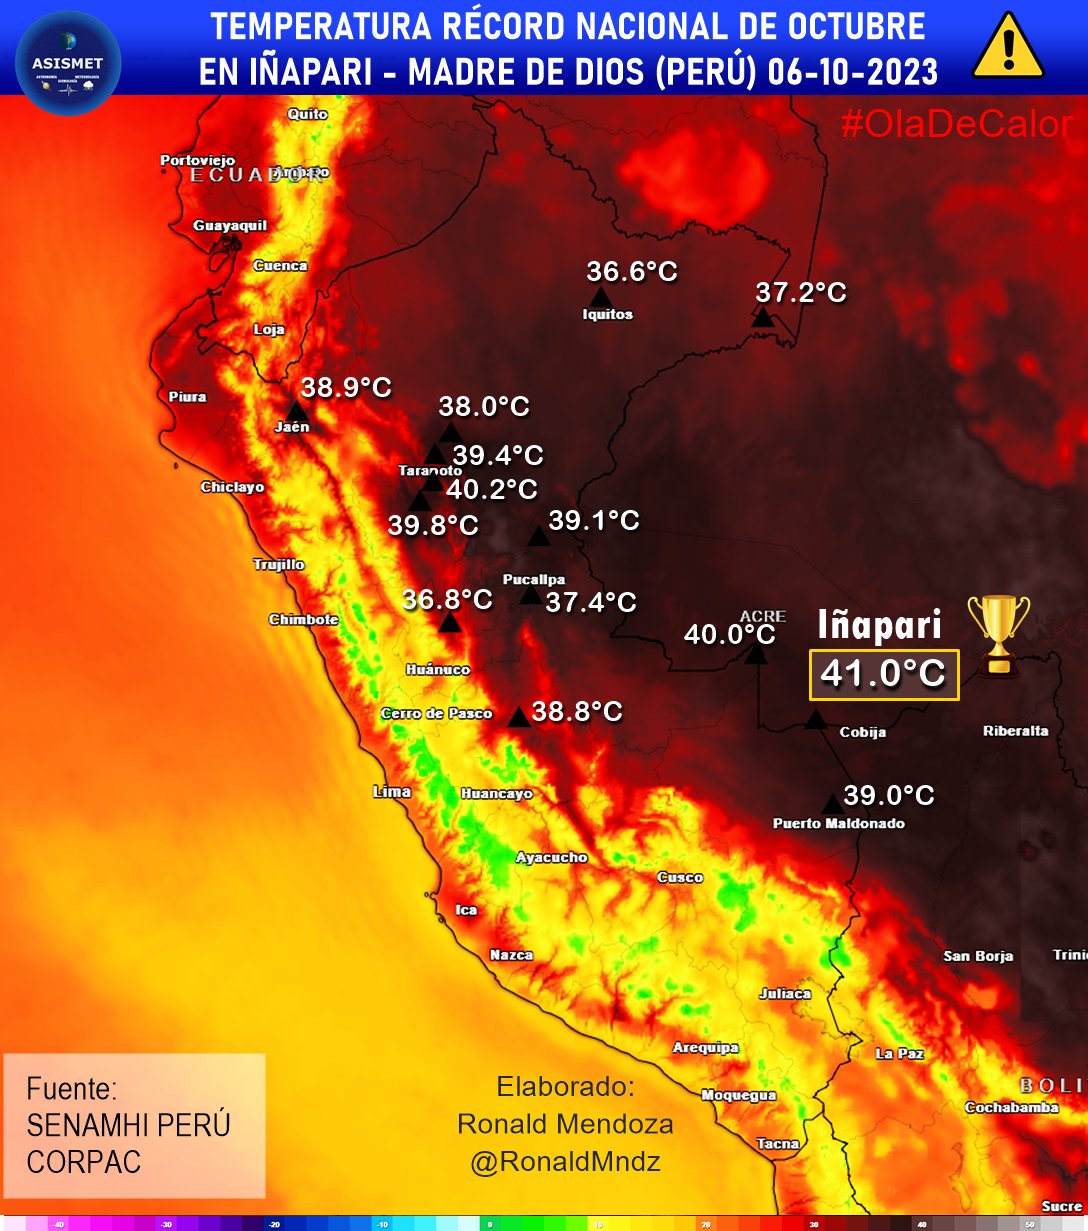 <p>Après avoir établi un record absolu national de chaleur fin septembre (41.4°C), le Pérou connaît un record national mensuel avec 41°C à Iñapari. Cette valeur bat les précédents records mensuels établis les jours précédents.</p>